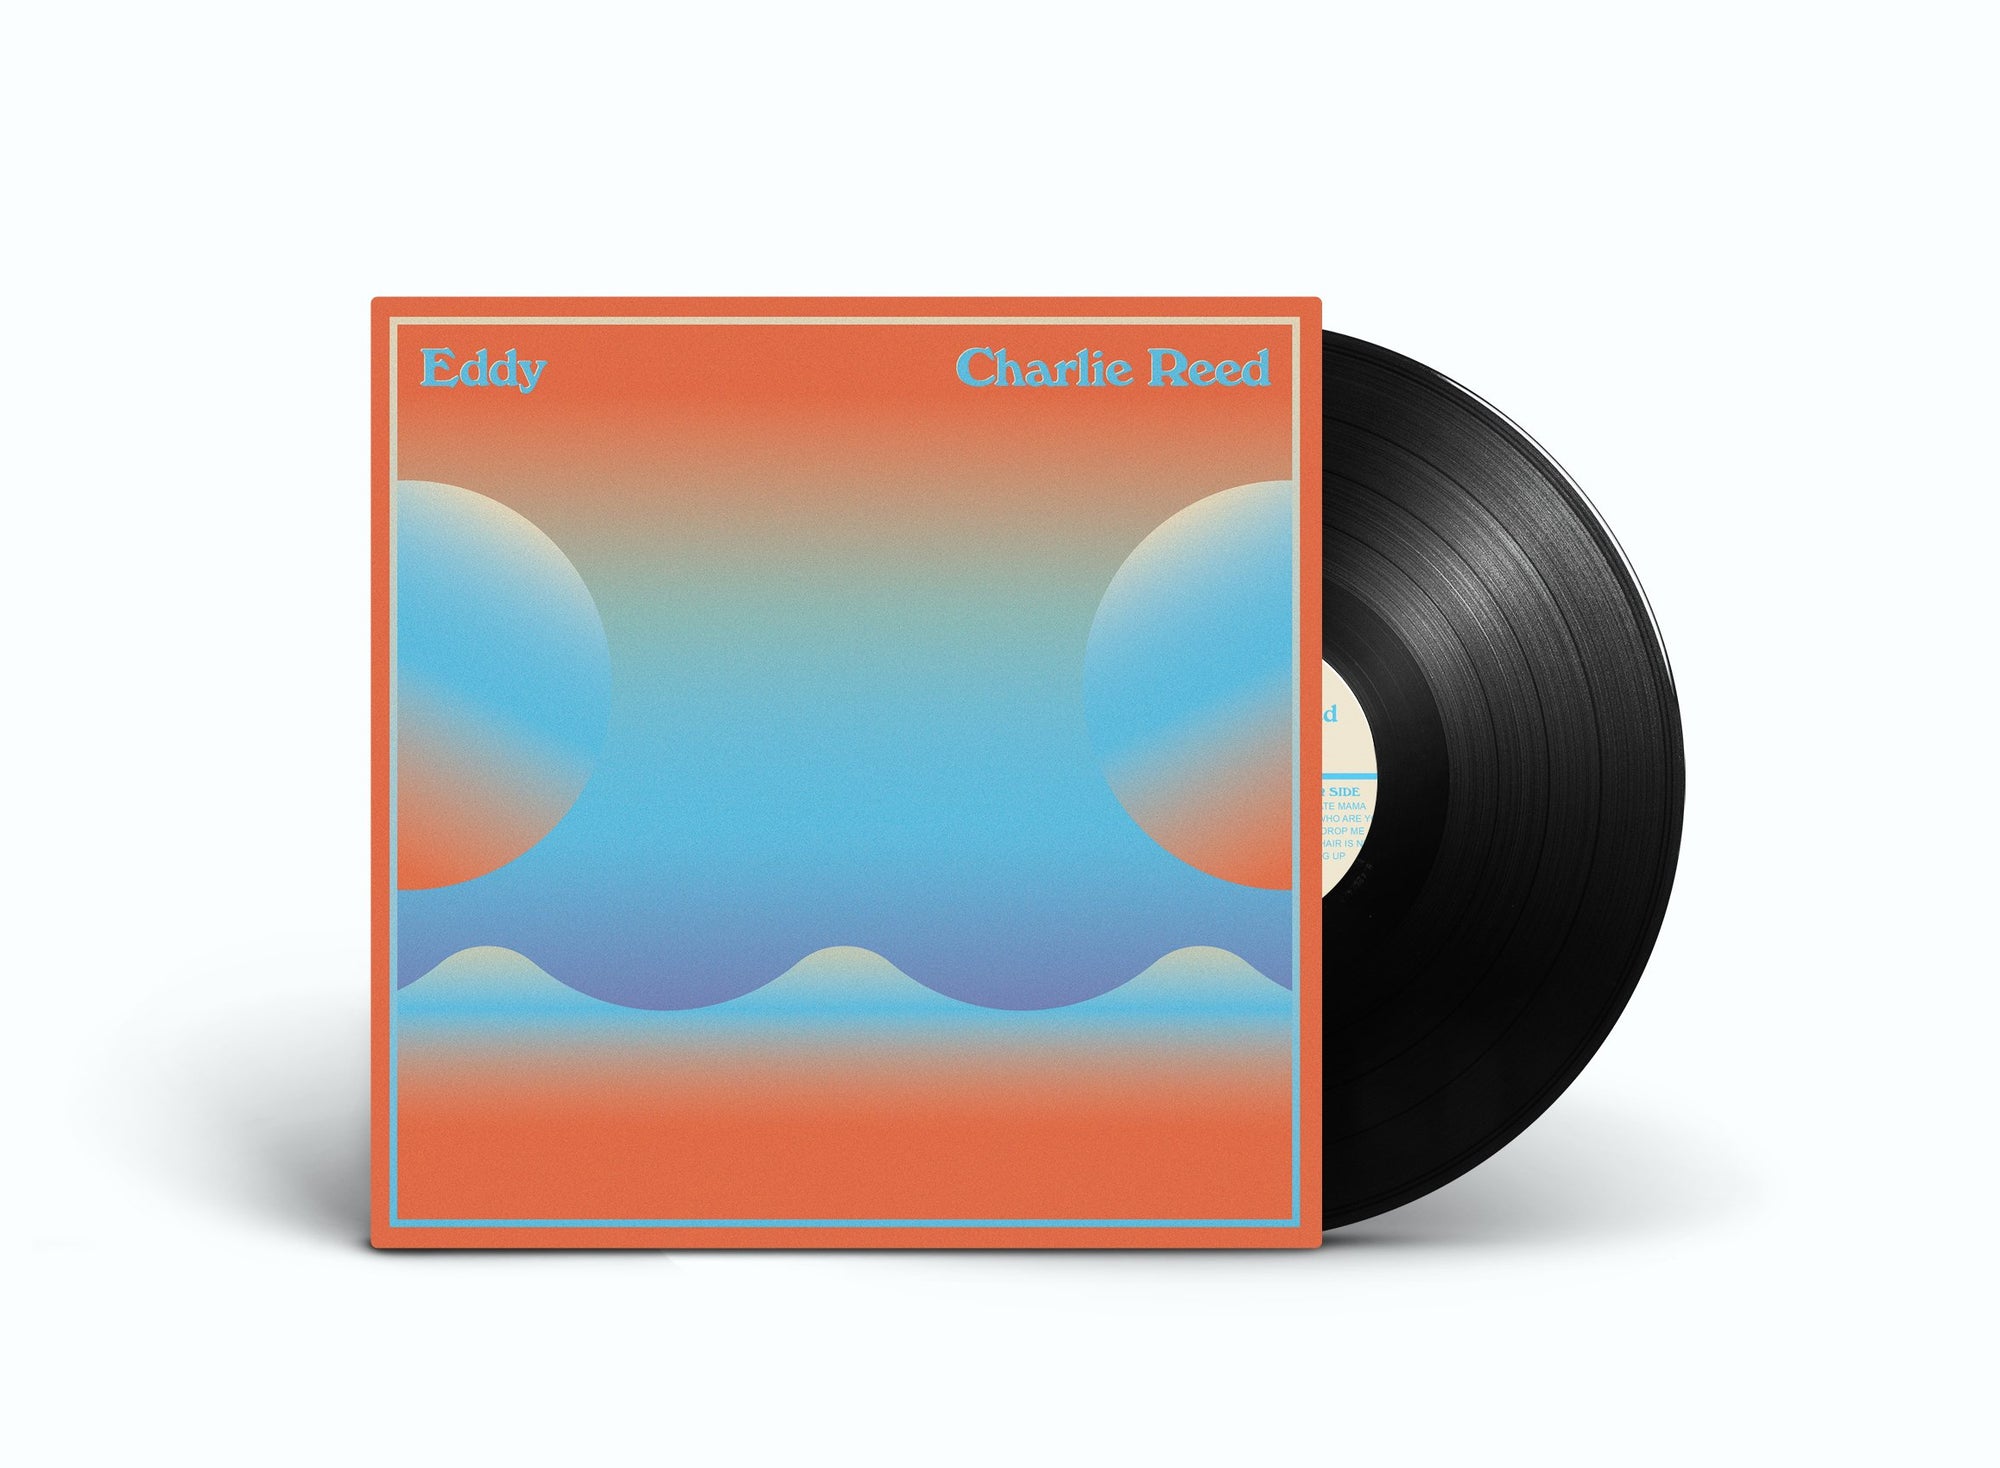 Charlie Reed - Eddy Vinyl